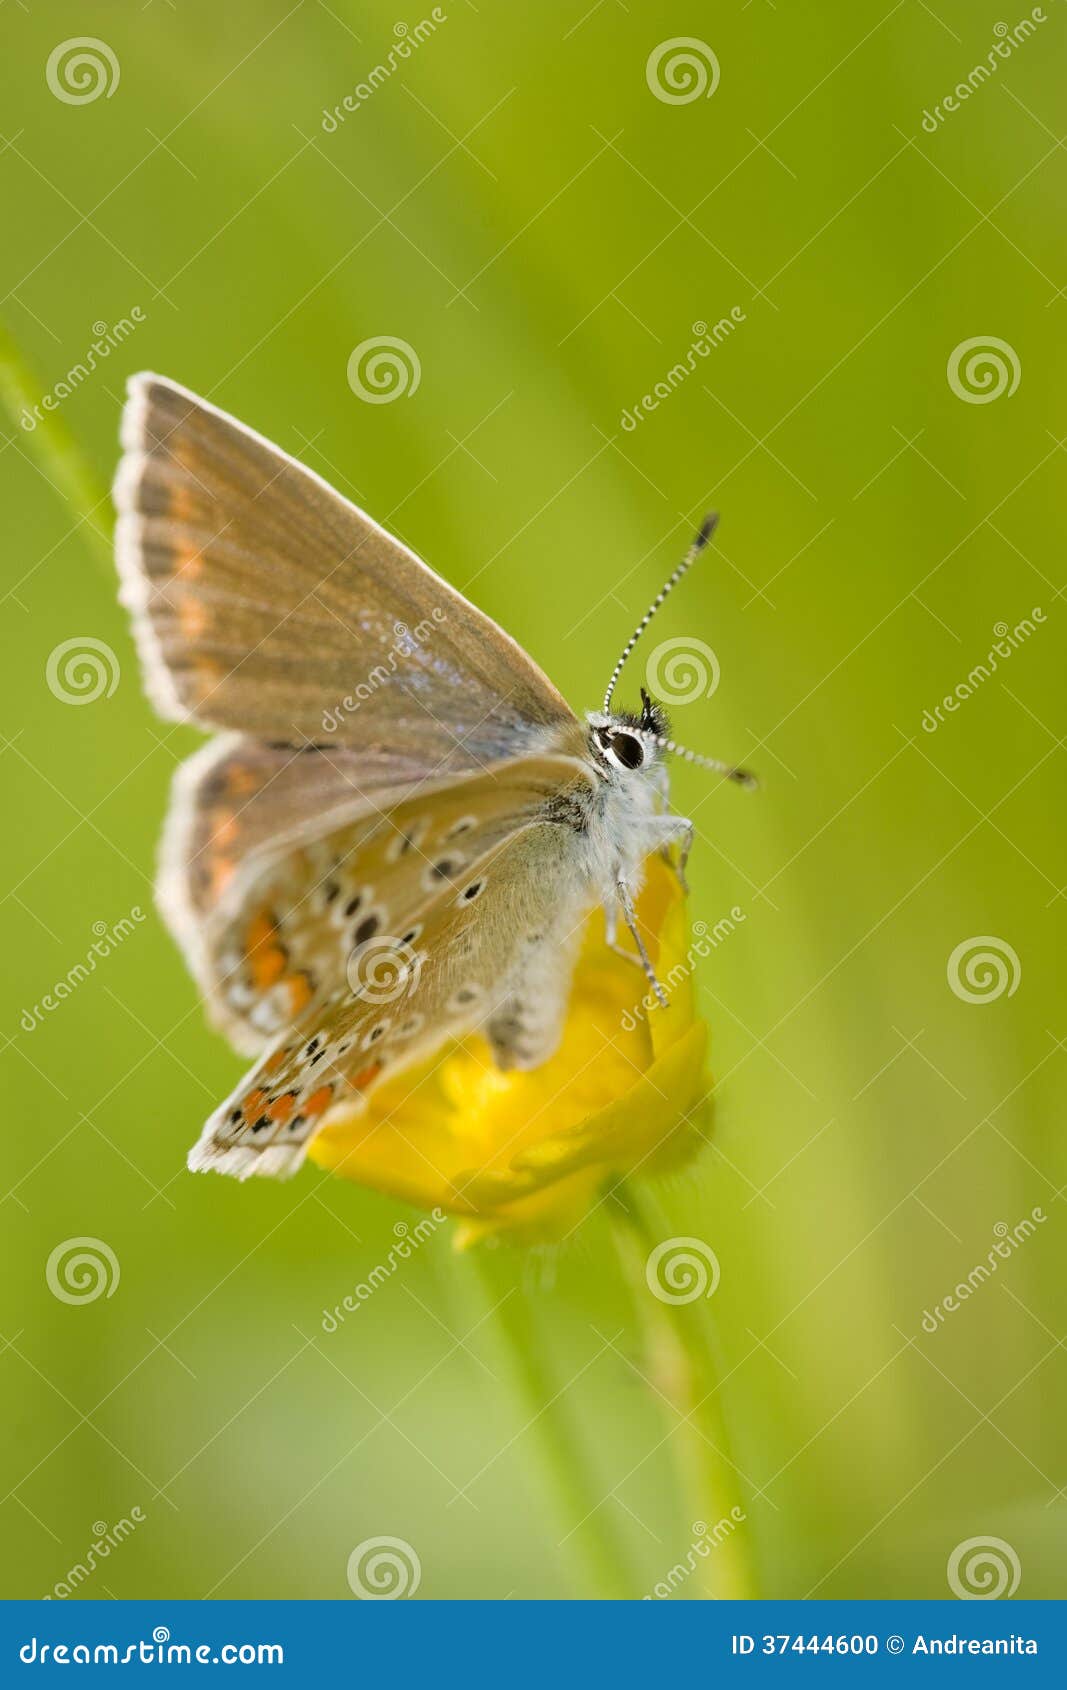 alpine heath butterfly